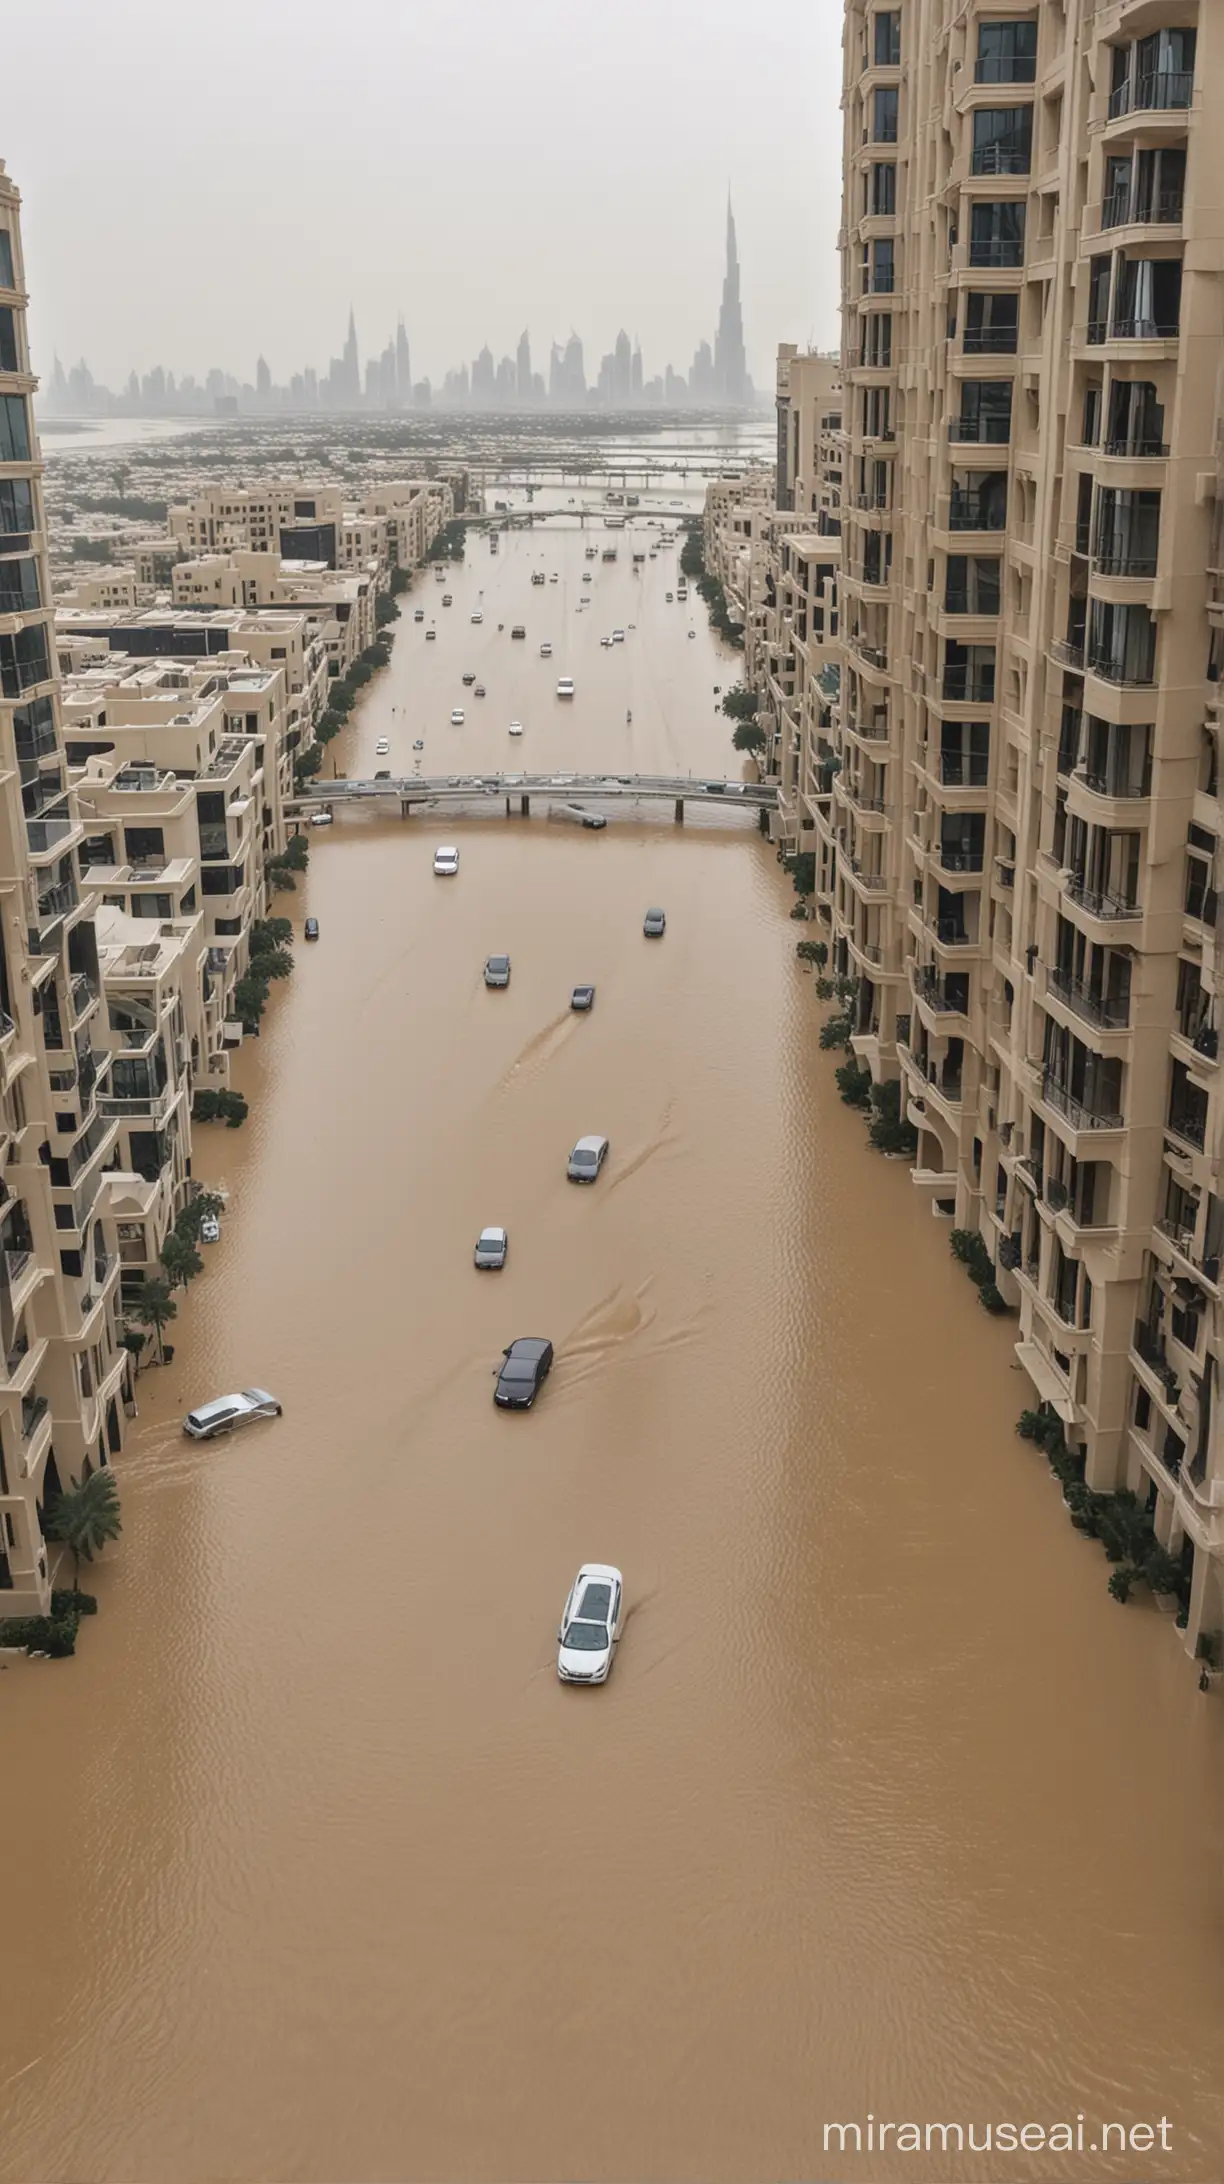 Luxury Dubai Buildings Amidst Rain and Floods